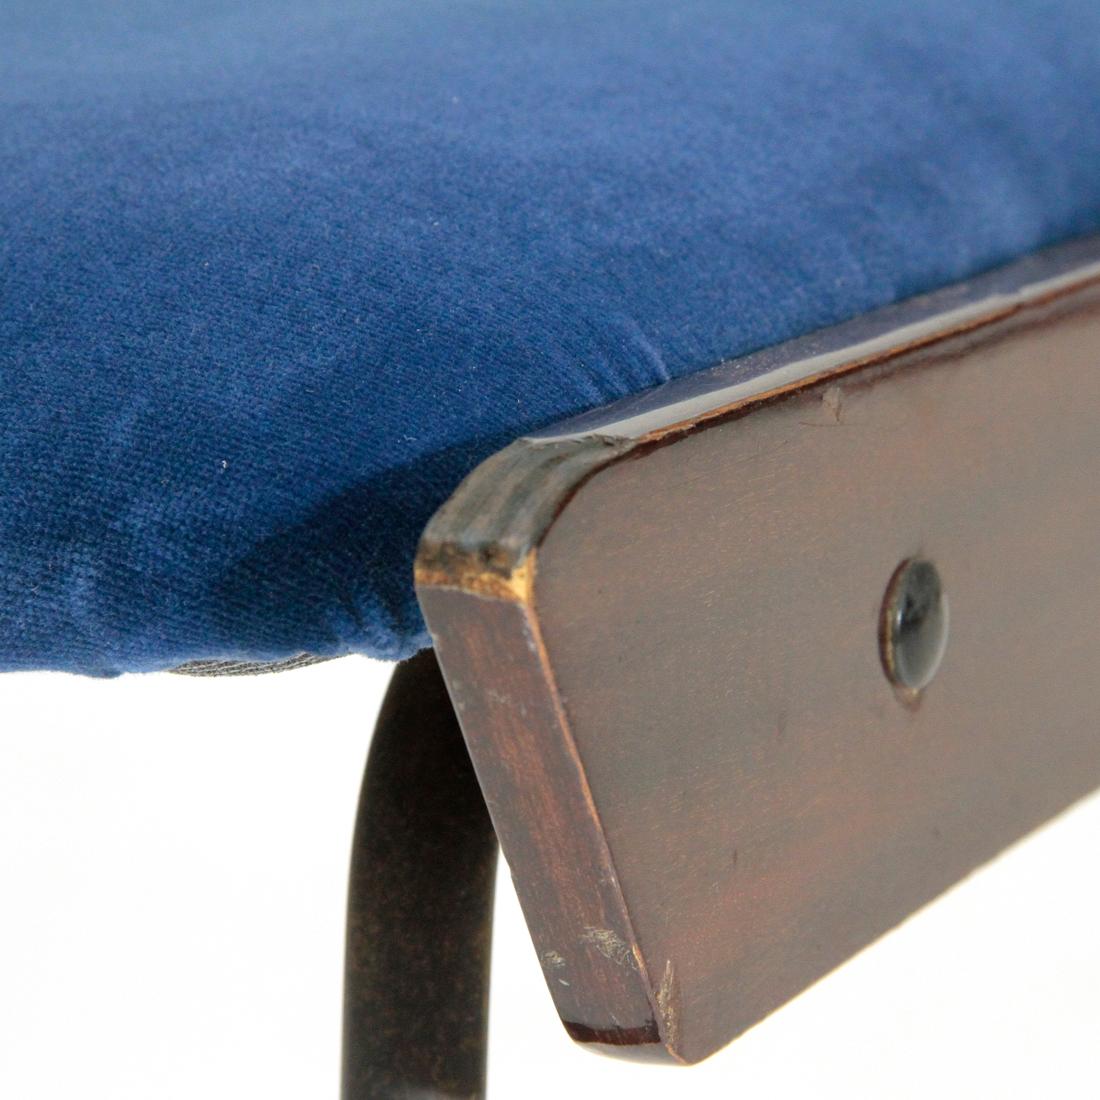 Pair of Midcentury Italian Blue Velvet Dining Chair by RB Rossana, 1950s For Sale 4